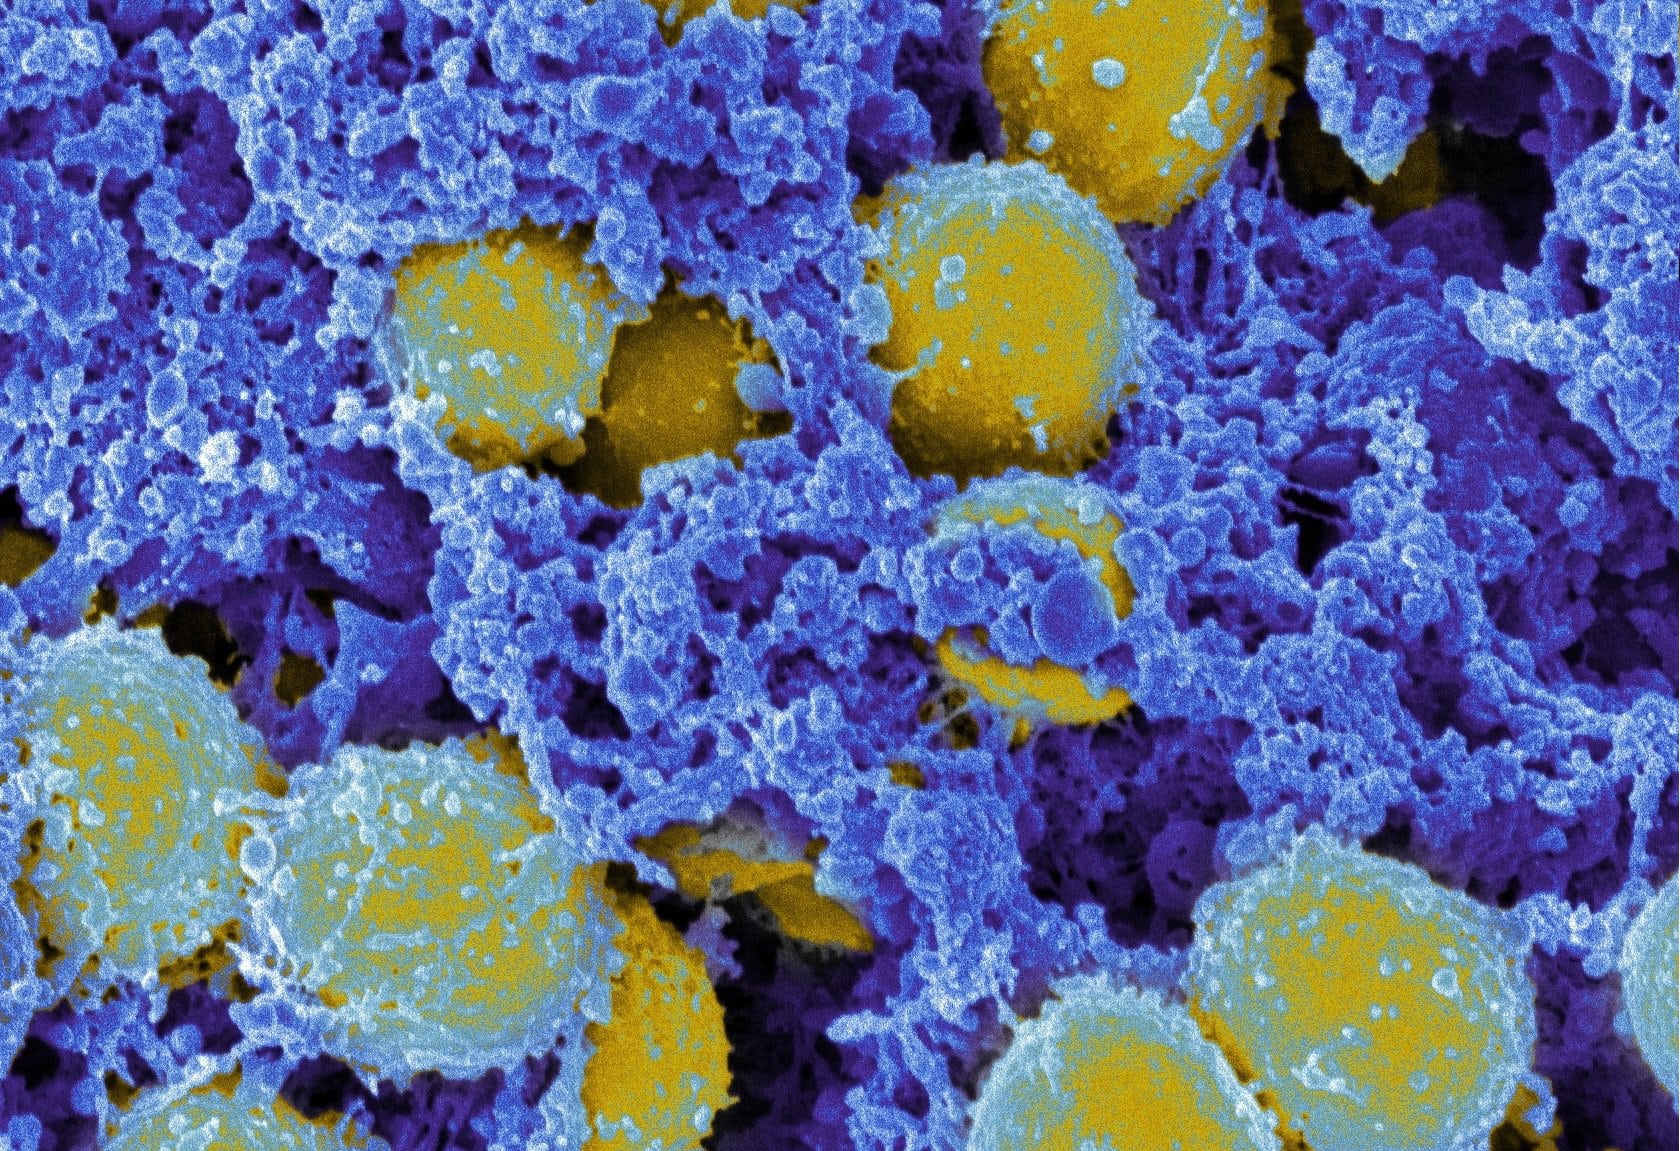 Staphylococcus aureus 3. Золотистый стафилококк под микроскопом. S. aureus золотистый стафилококк. Метициллин-резистентный золотистый стафилококк.